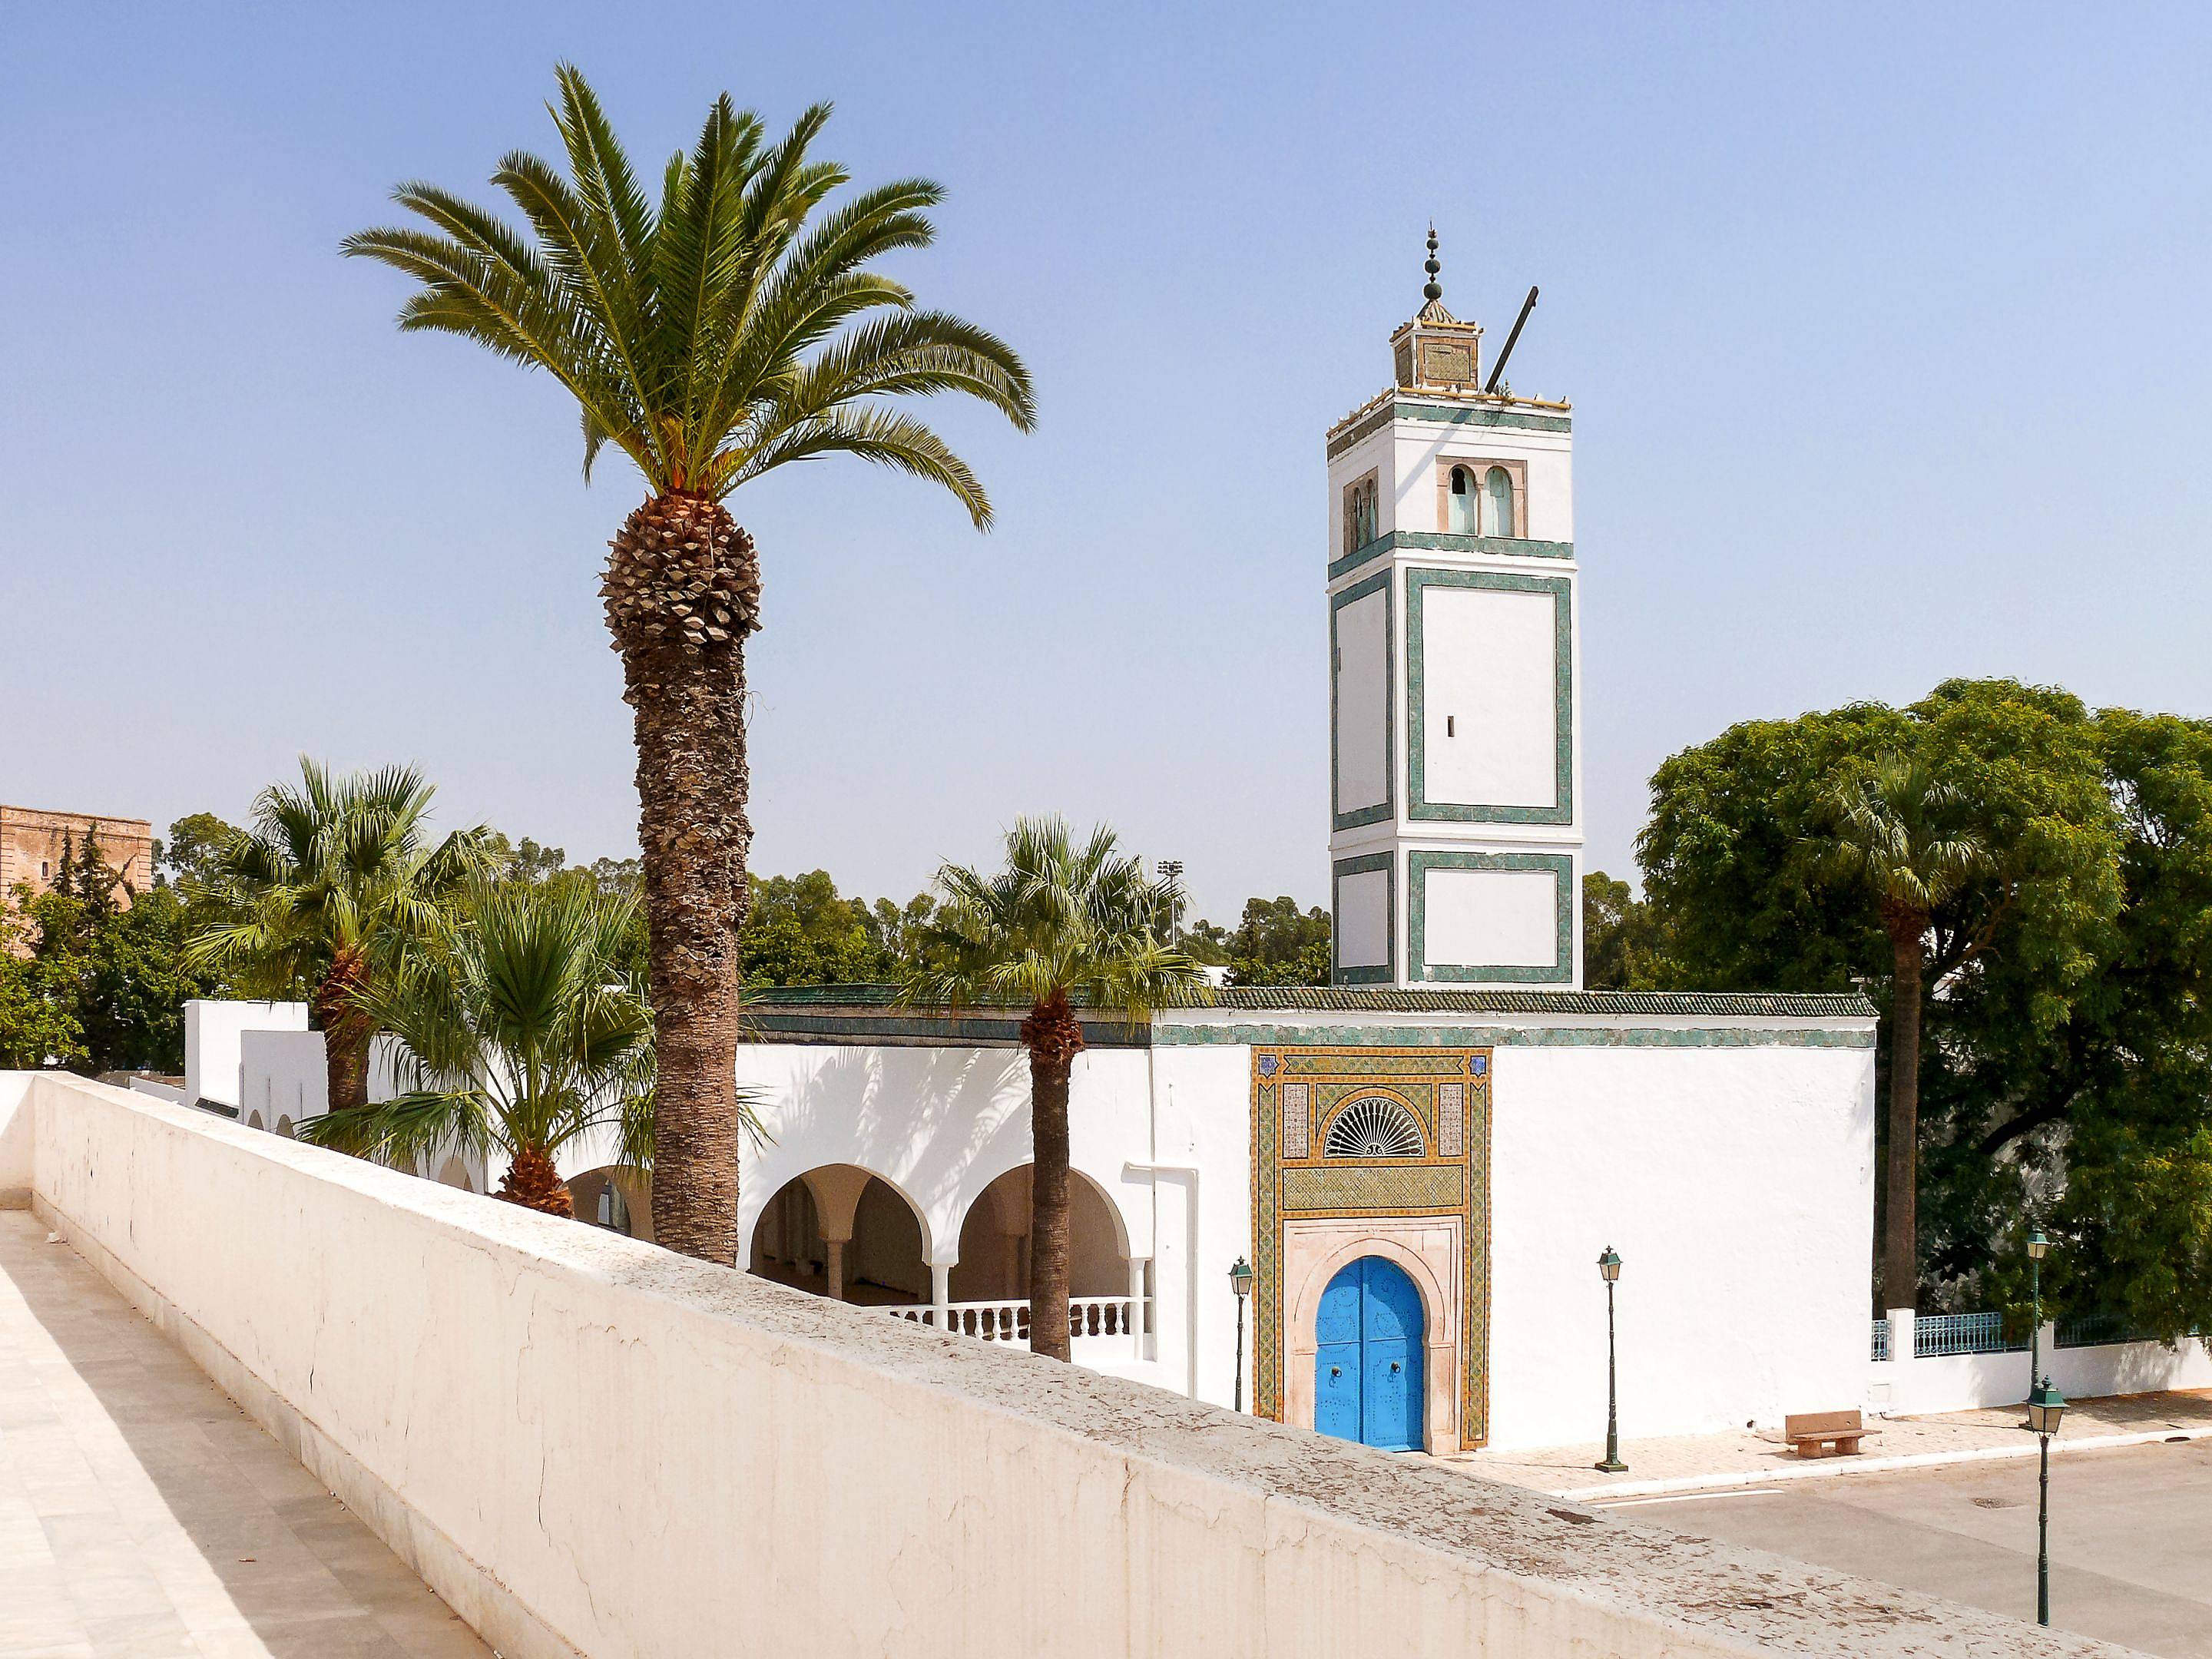 Visita di Tunisi, Cartagine e Sidi Bou Said